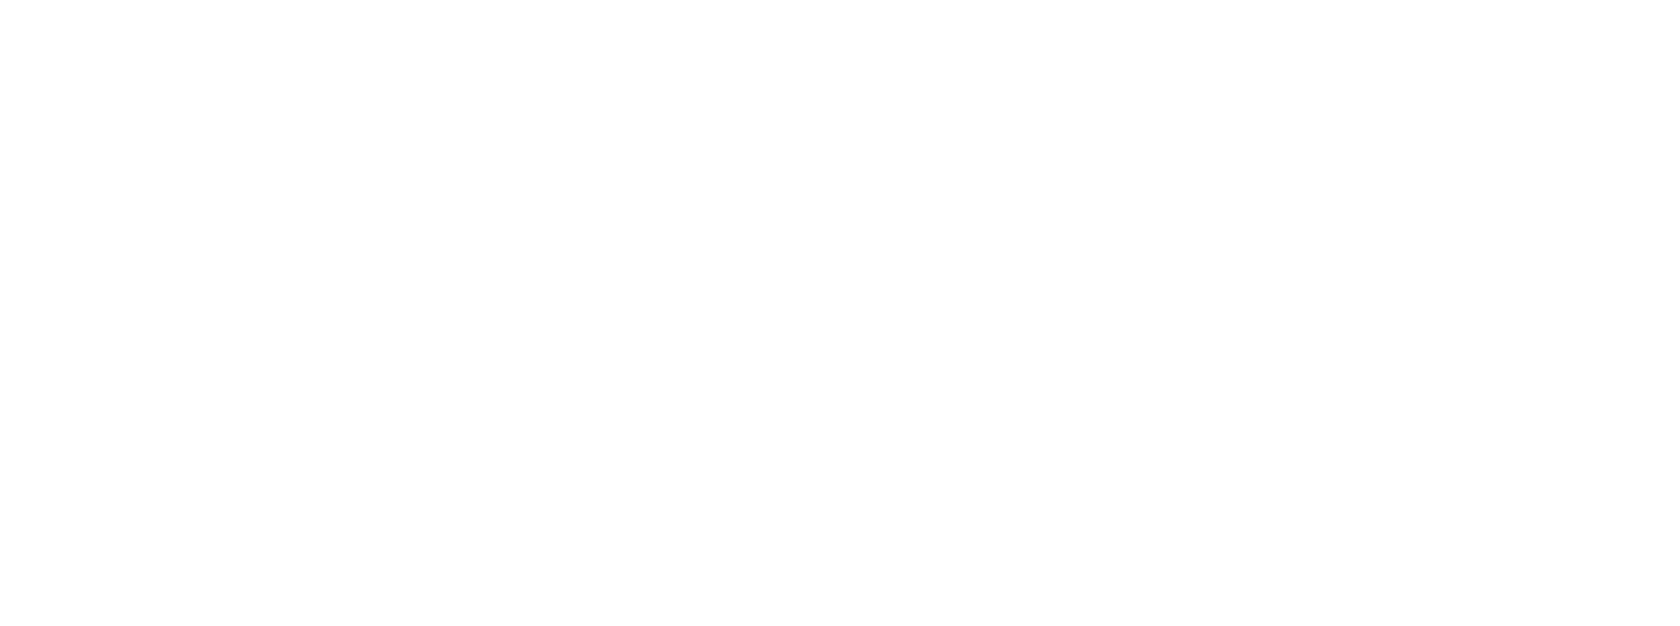 дизайн логотипа сушів